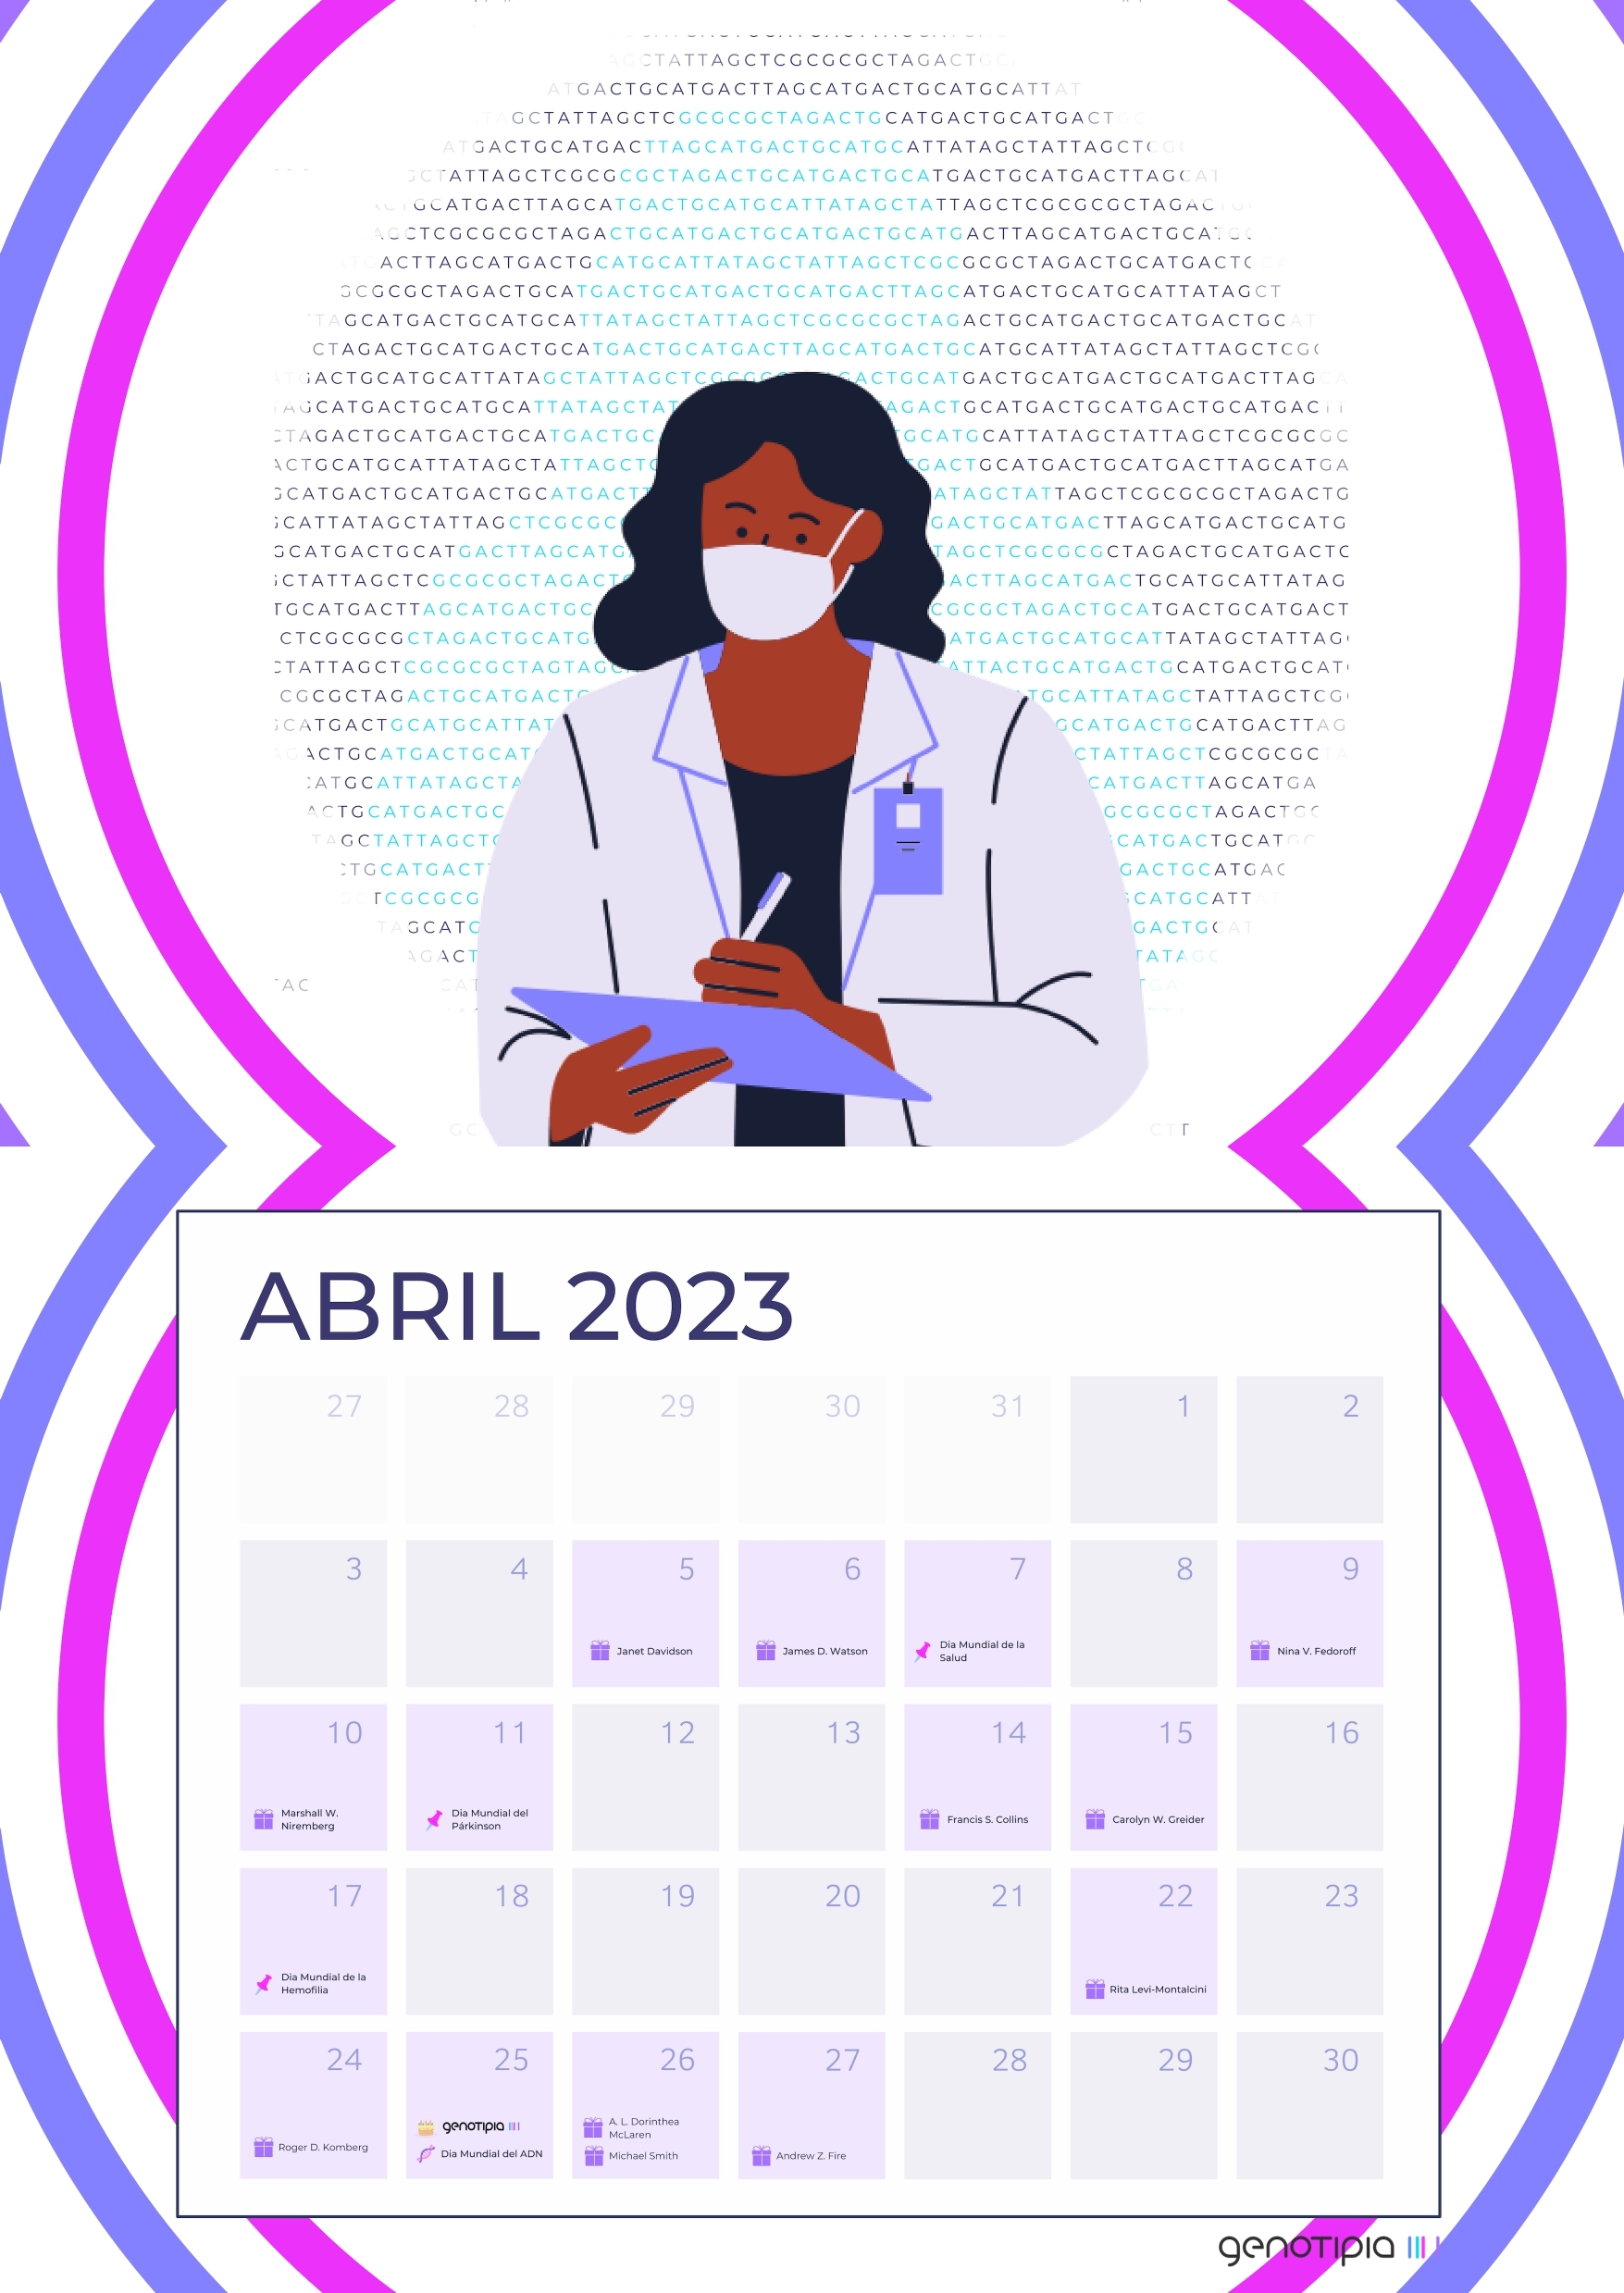 Calendario Abril Calendario genético: abril 2023 - Genotipia